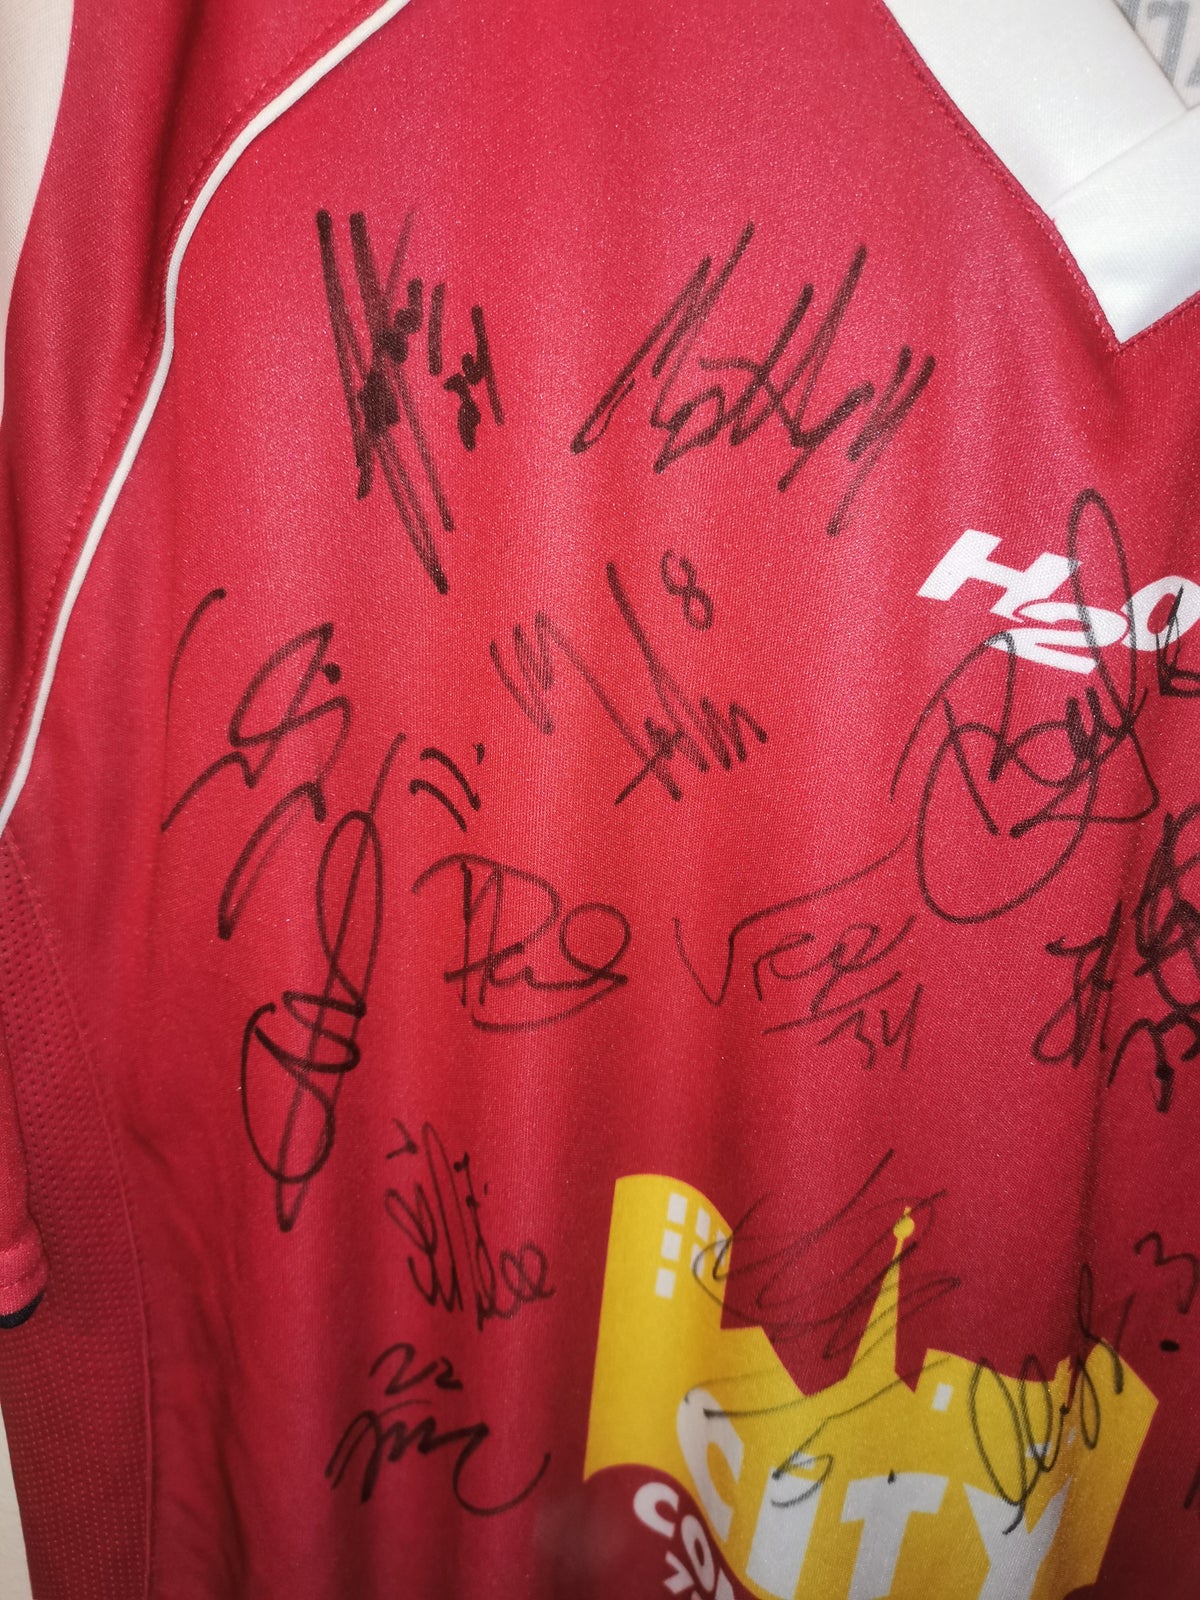 Fodboldtrøje, Fc Nordsjælland trøje med autografer, H2o